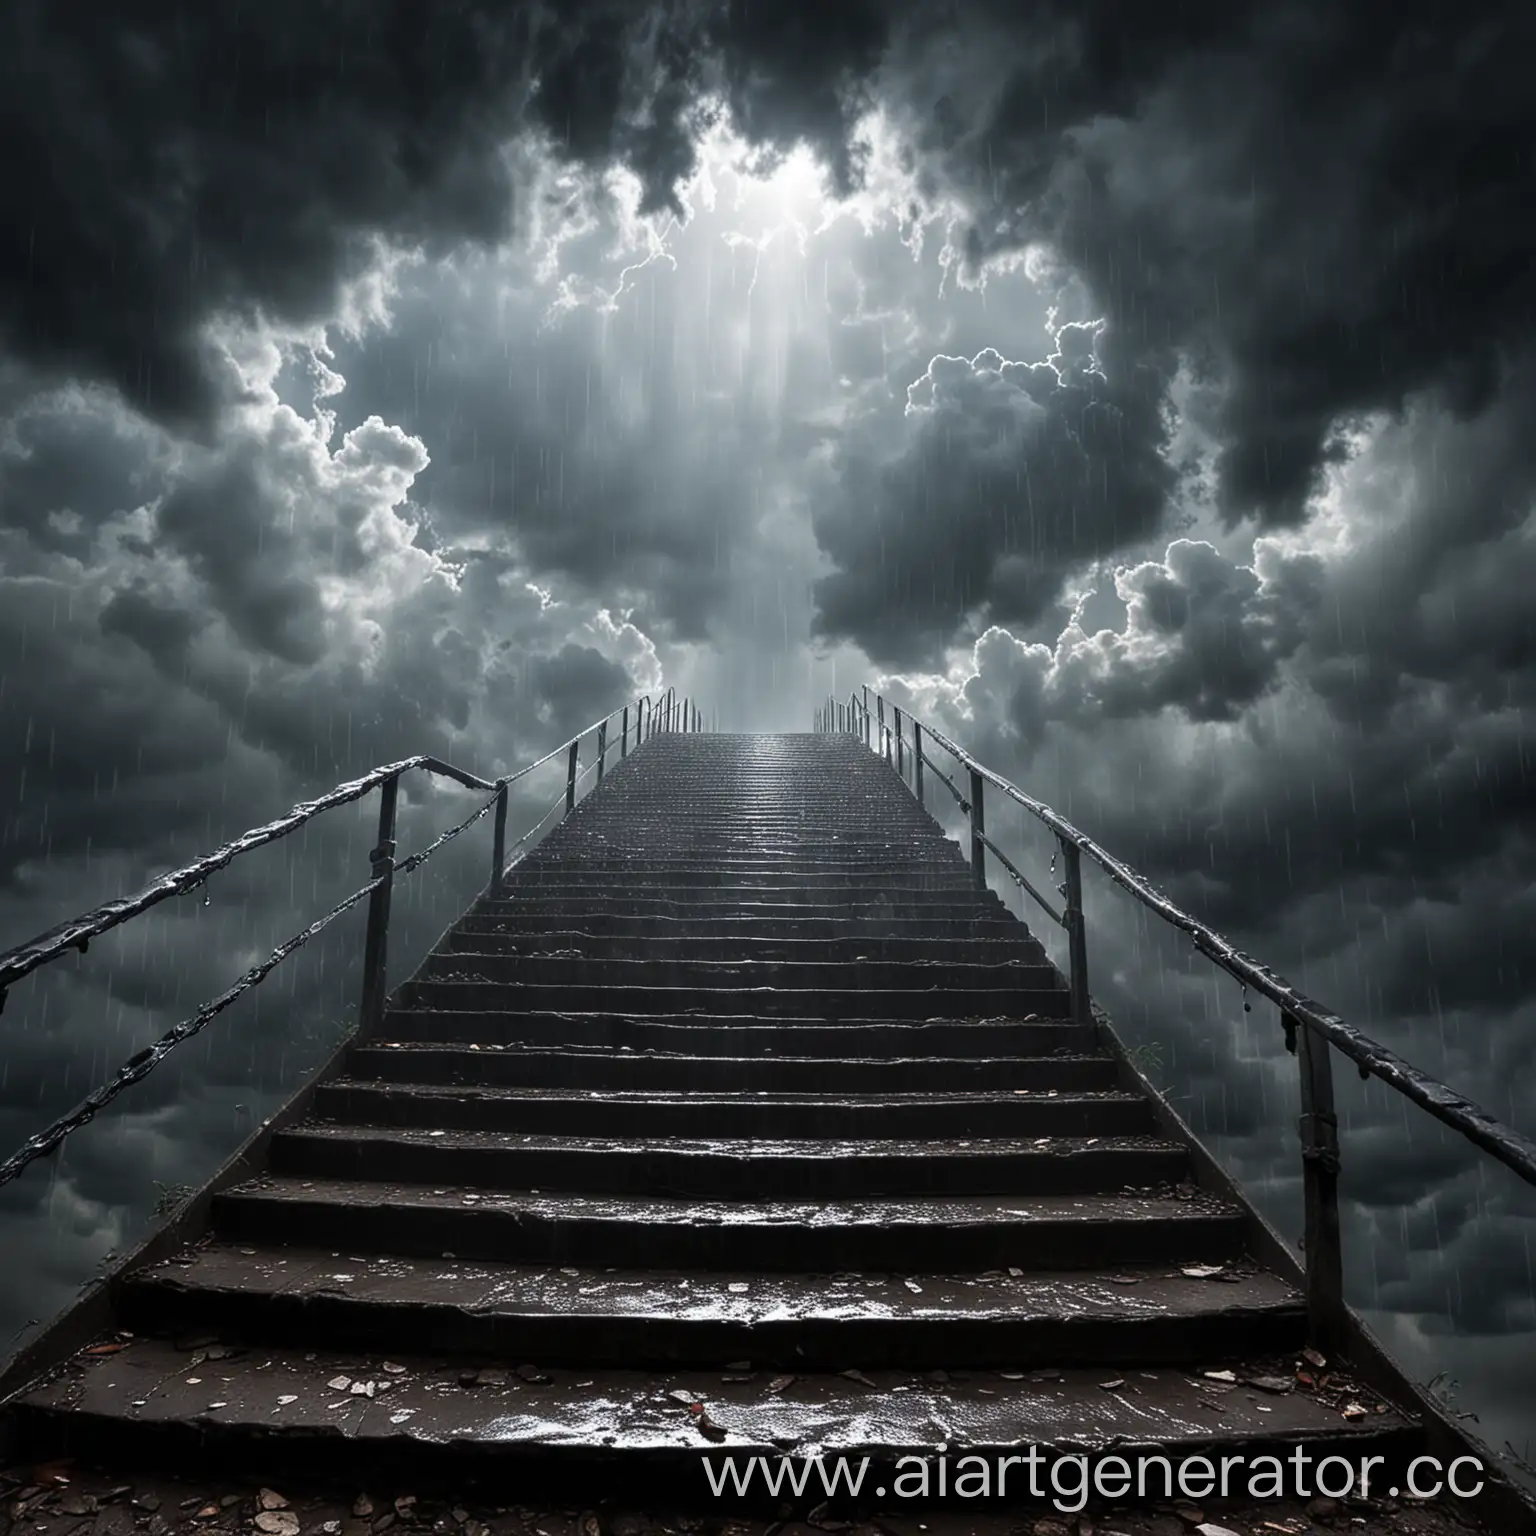 ступени в рай на небе, в конце лестницы виден свет, вокруг лестницы дождь, гроза, пасмурные облака